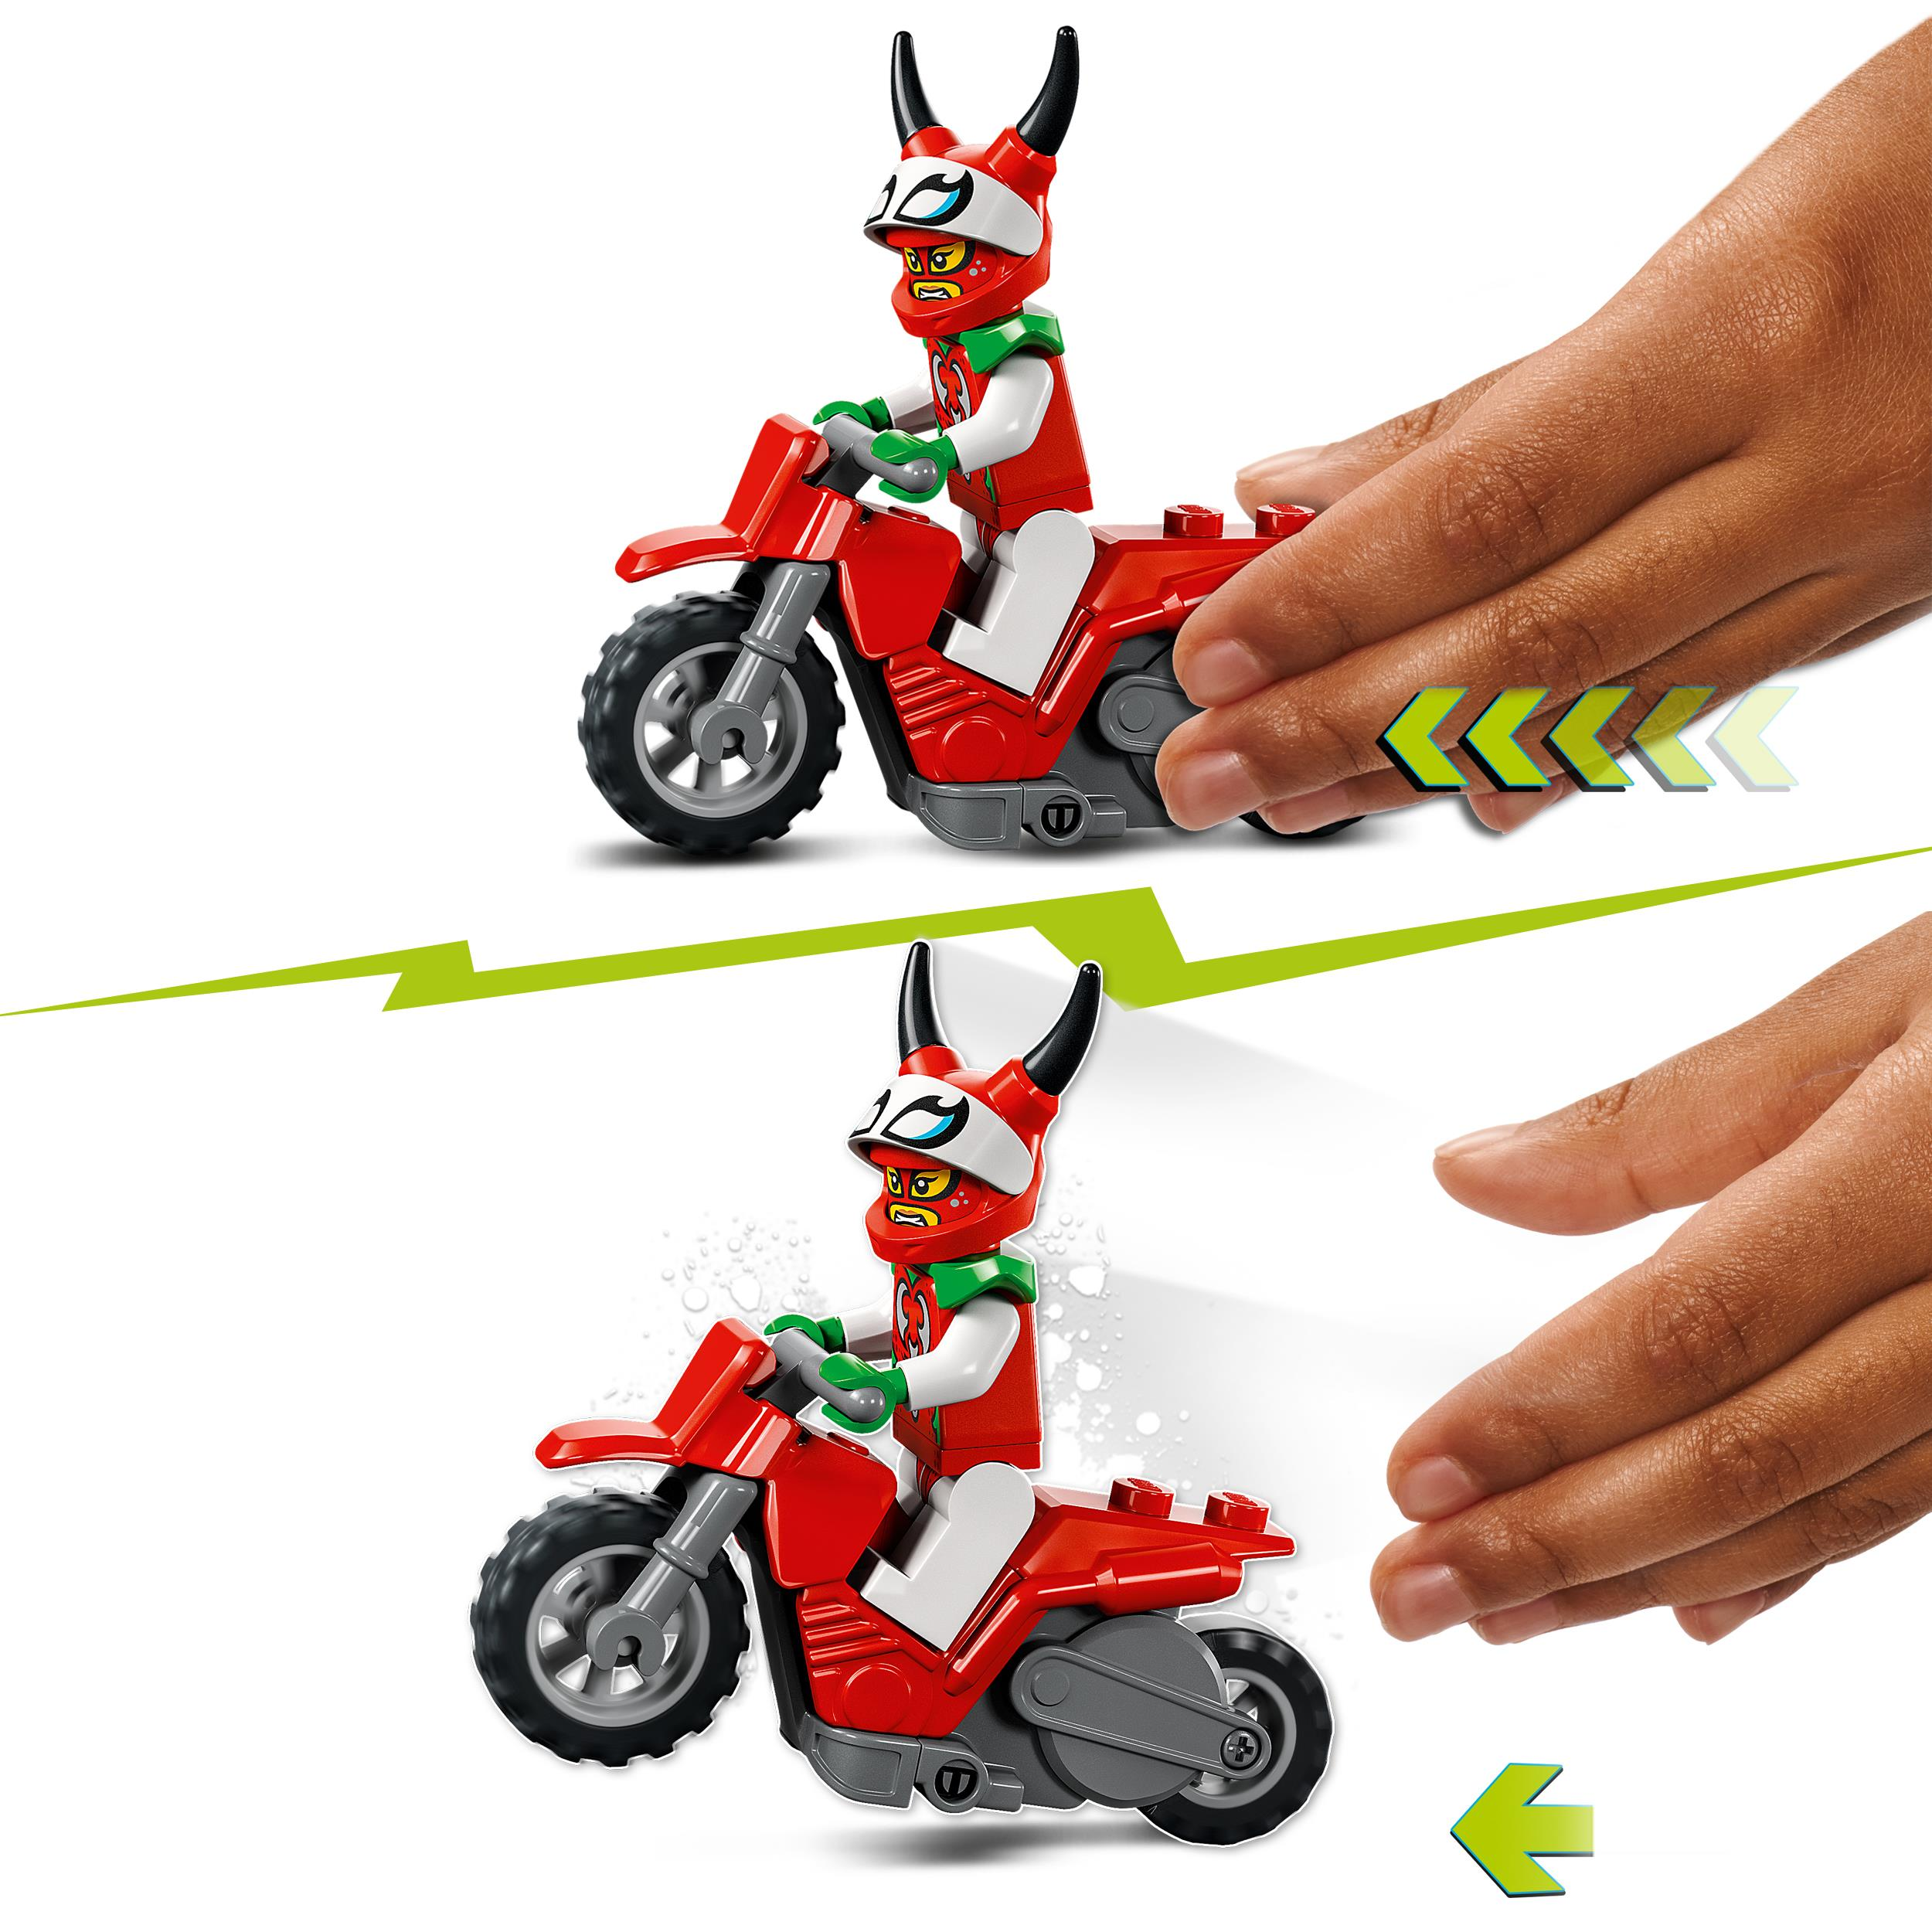 60332 Skorpion-Stuntbike City Bausatz, LEGO Stuntz Mehrfarbig